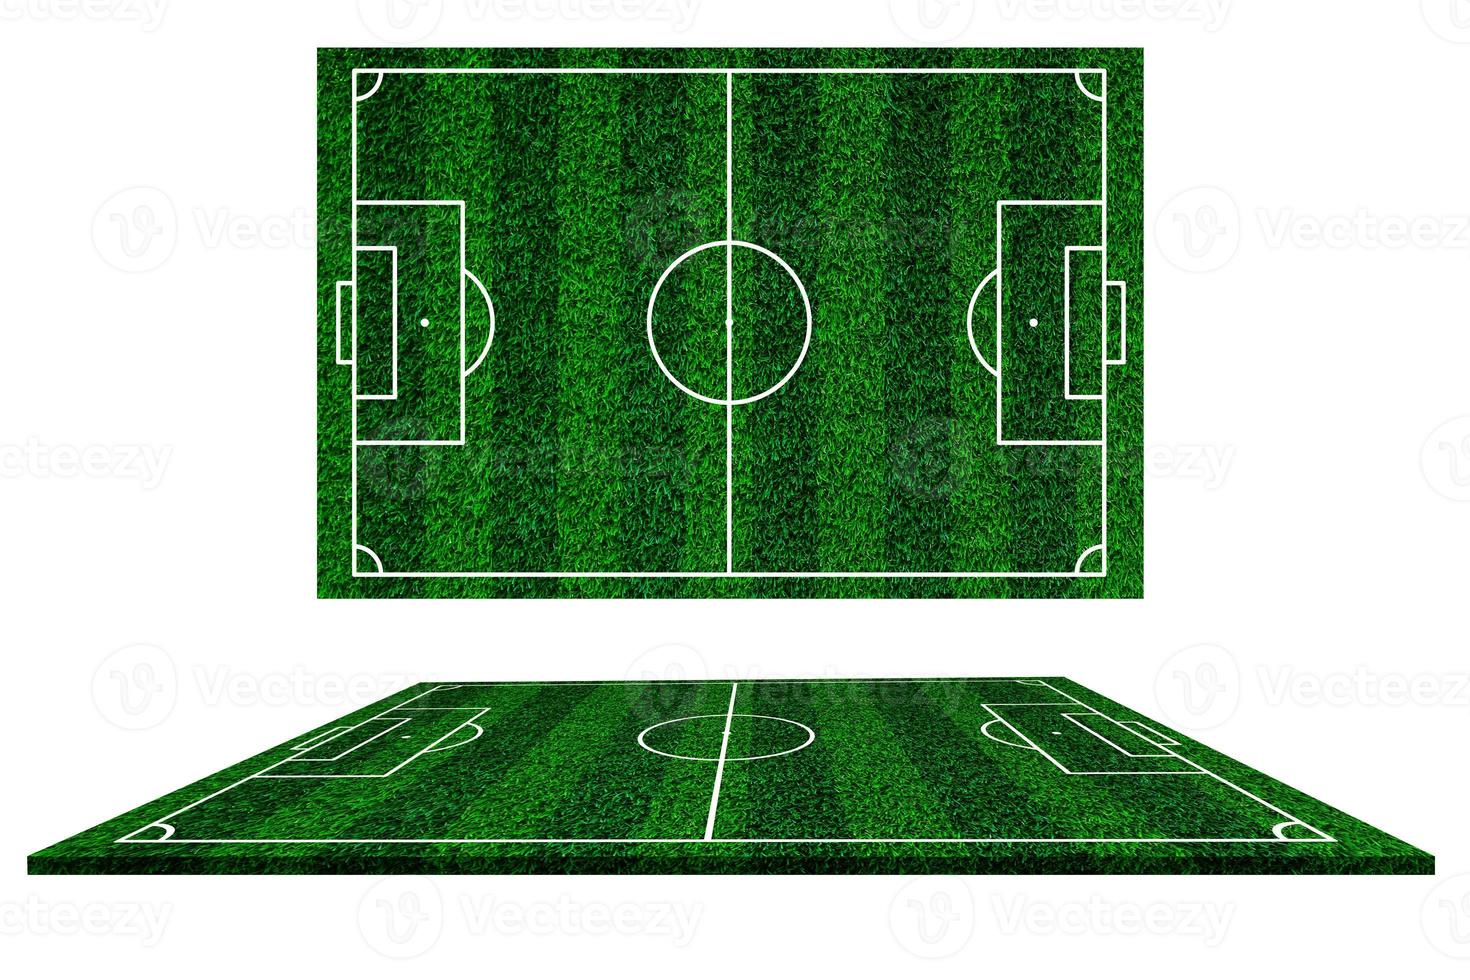 verzameling van voetbal veld- elementen uitzicht, groen gras Amerikaans voetbal veld- van kunstmatig gras achtergrond , spelen veld- van voetbal, wit lijnen dat afbakenen de gebieden foto